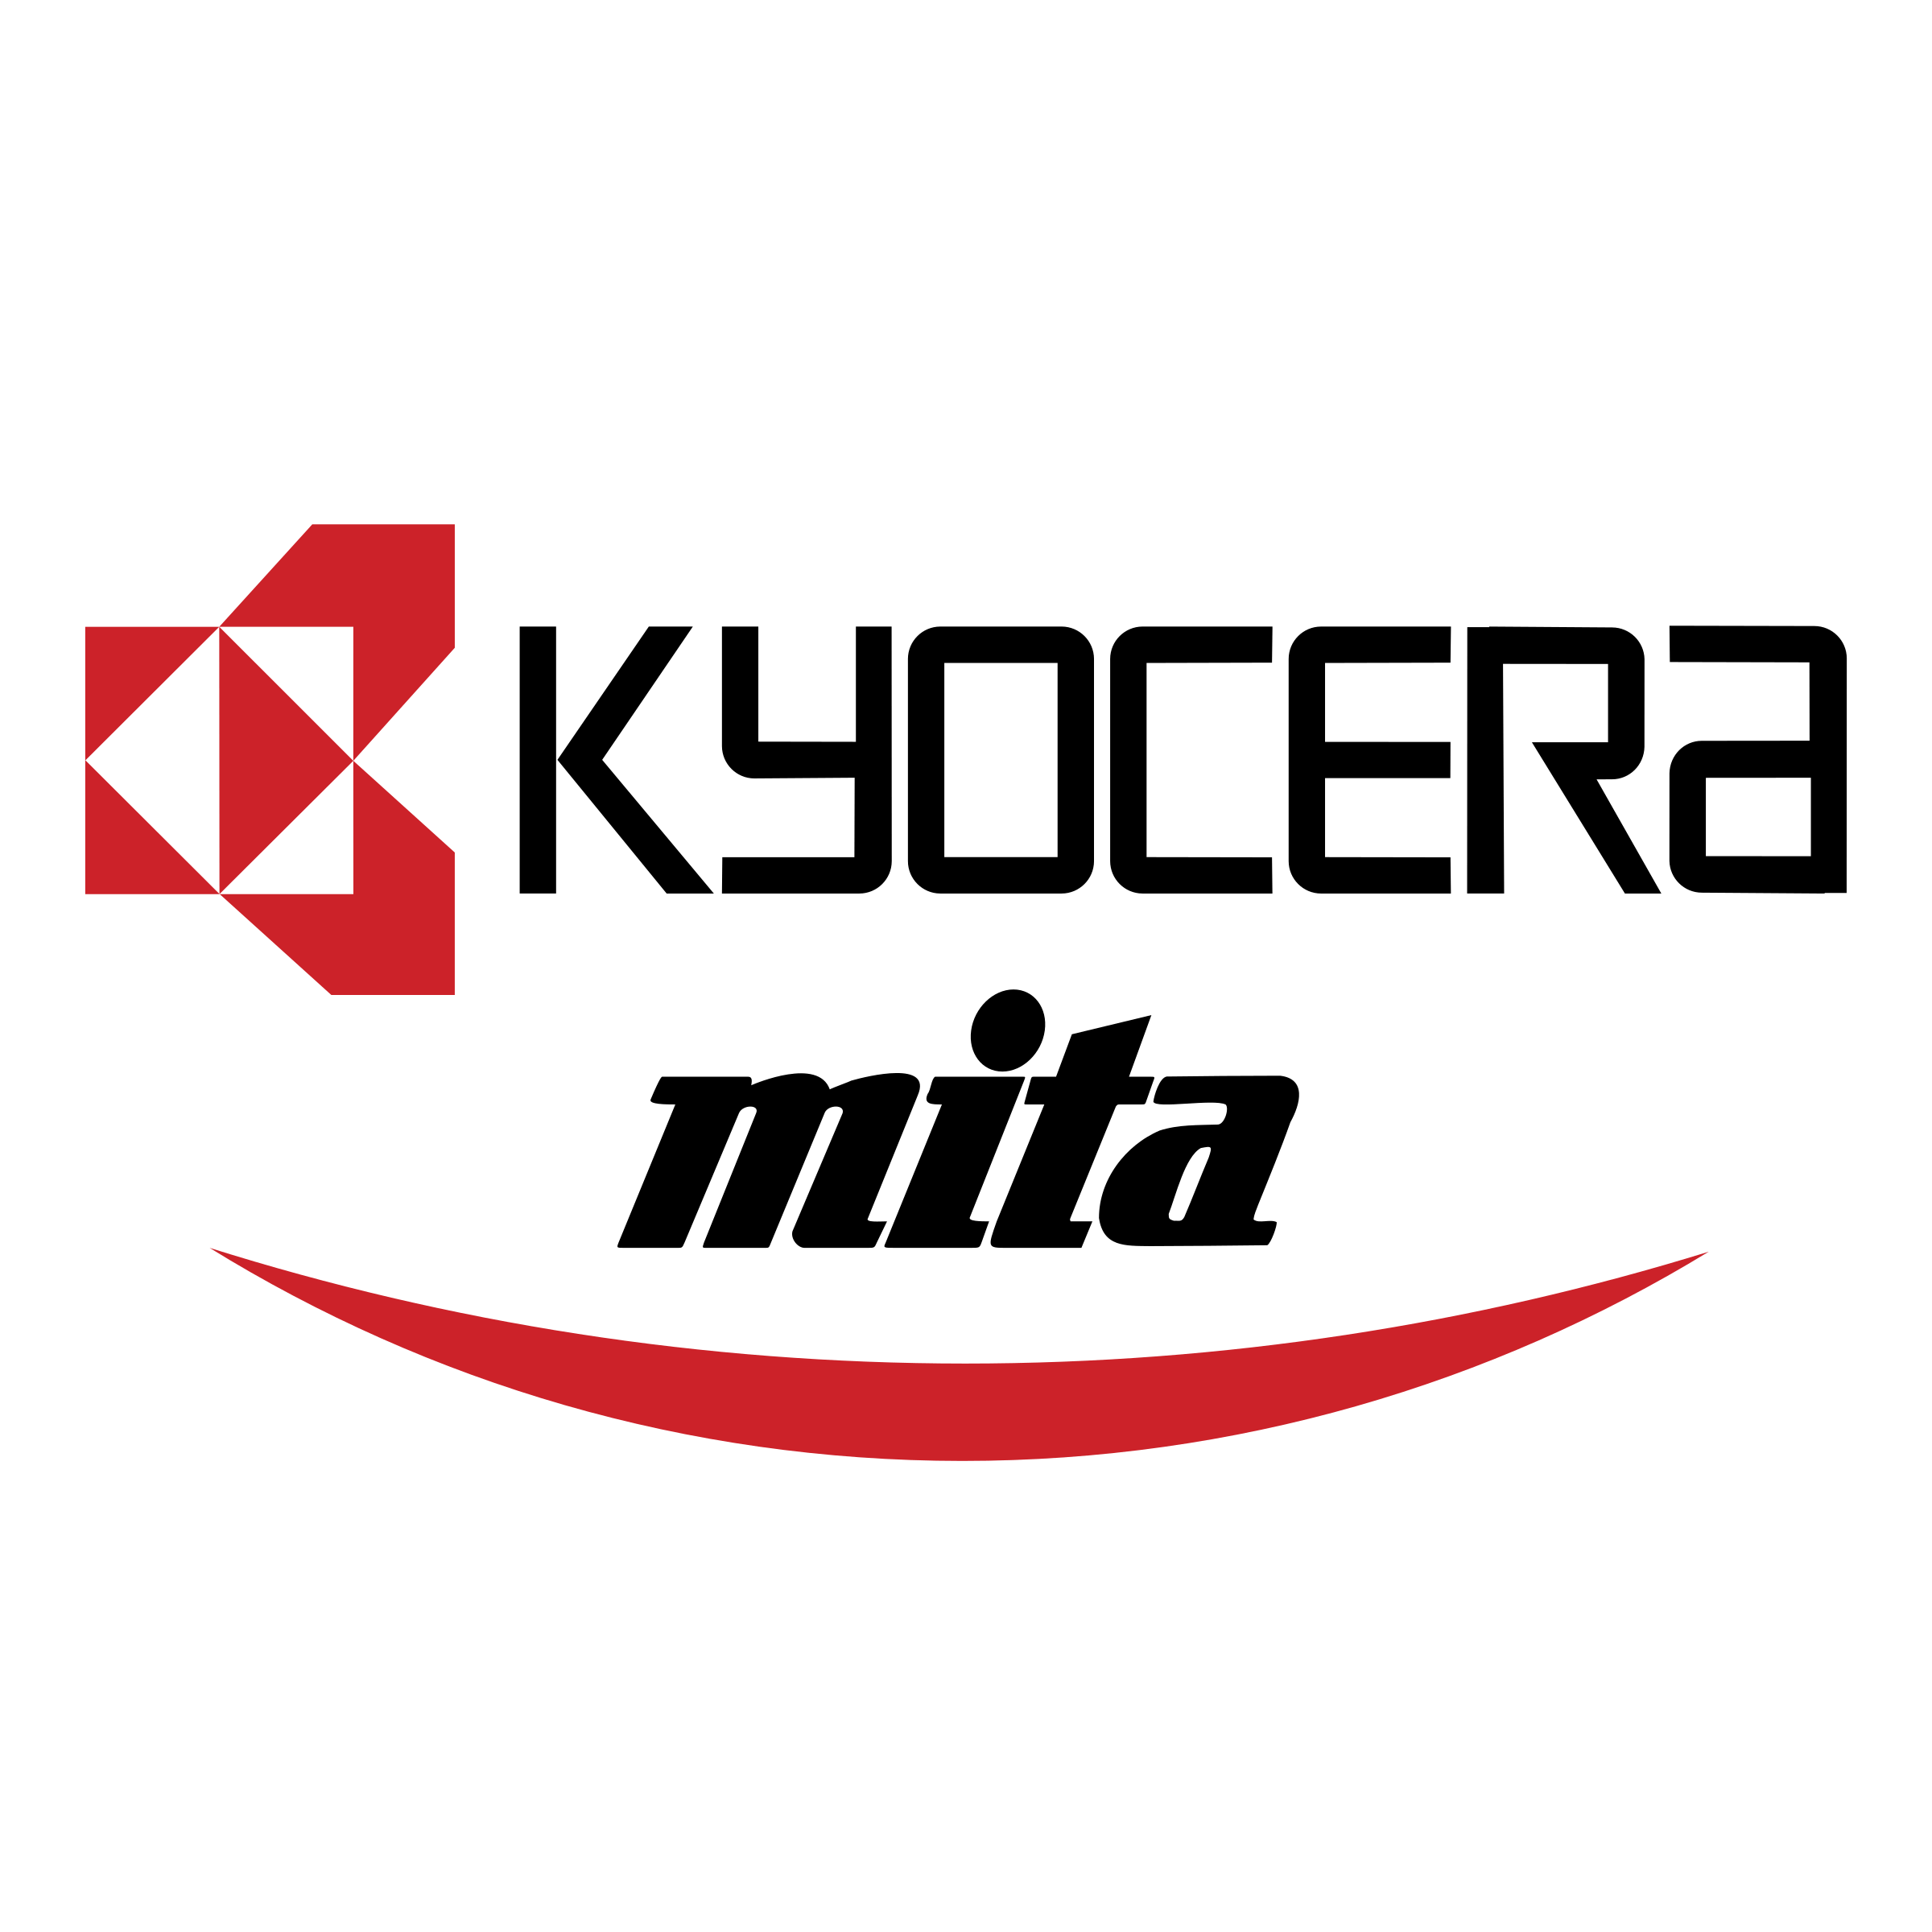 Kyrocera Logo - Kyocera Mita Logo PNG Transparent & SVG Vector - Freebie Supply